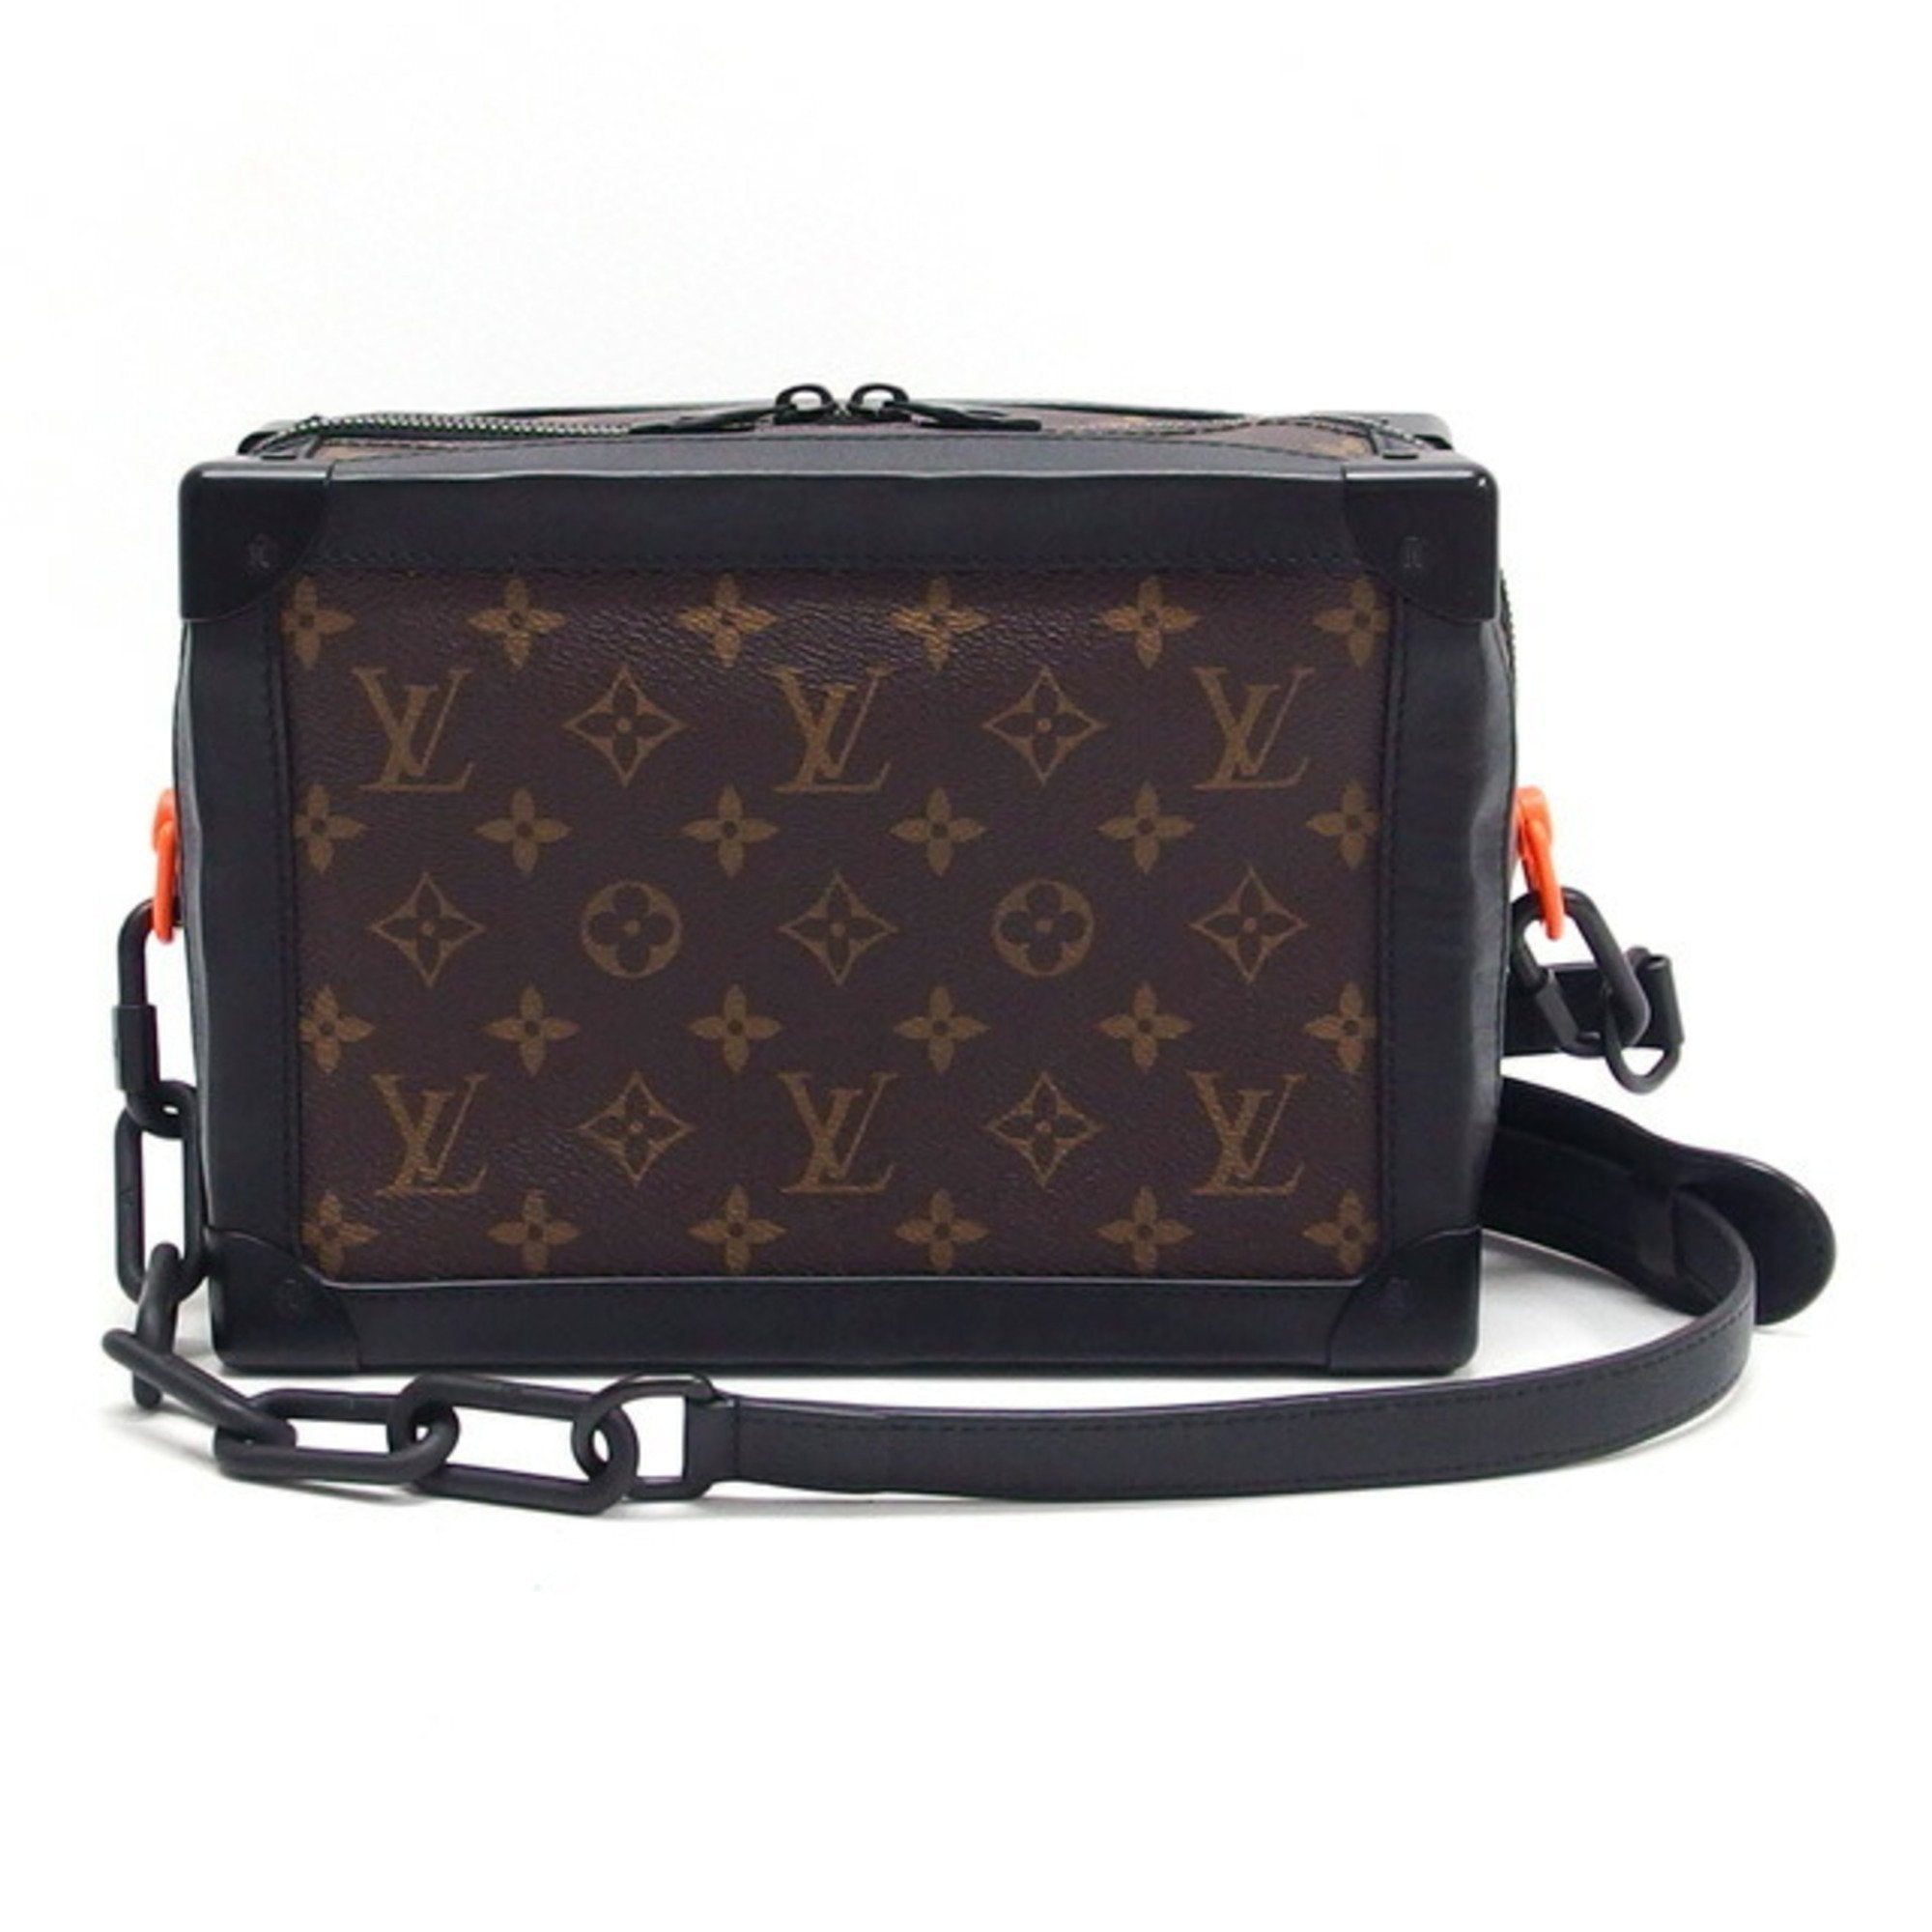 Louis Vuitton Trunk Messenger Bag